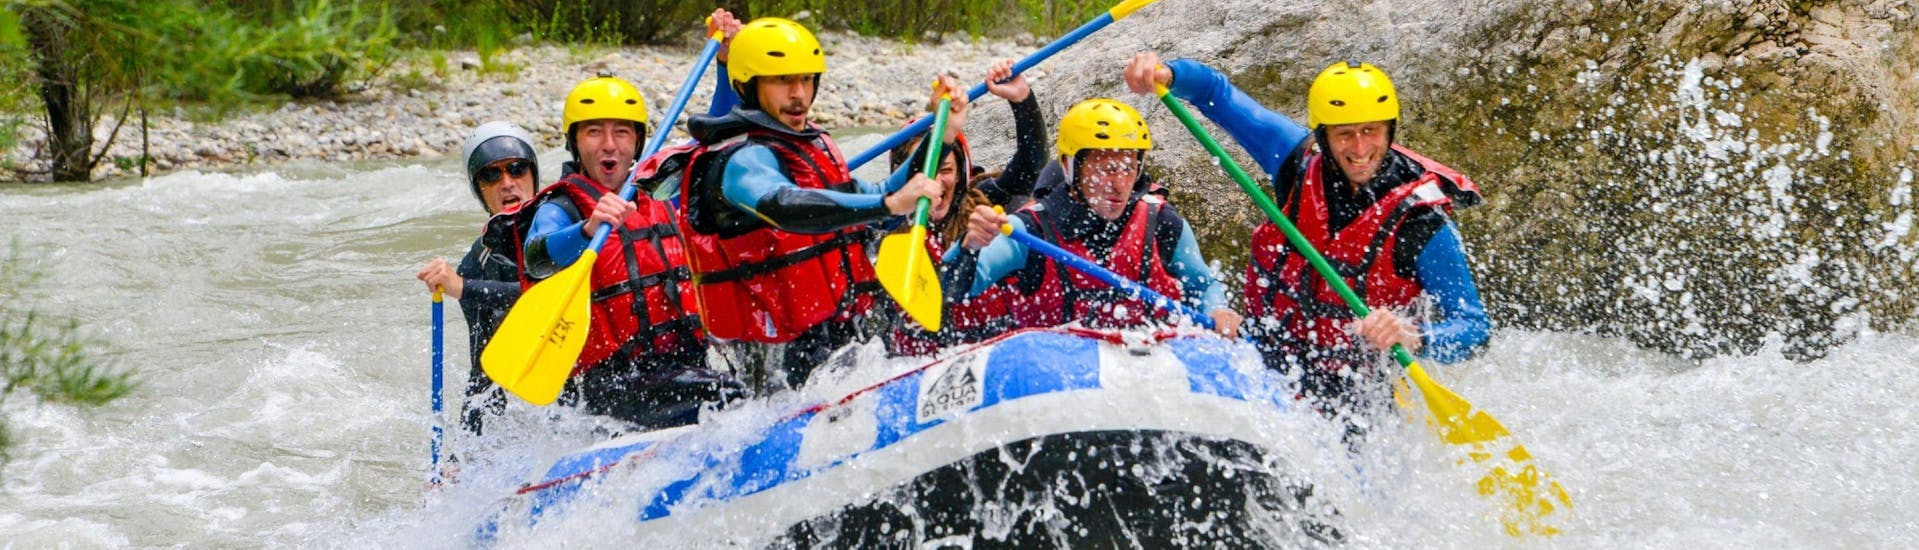 Un grupo queda atrapado en los rápidos y se divierte durante el descenso completo en rafting del río Verdon, organizado por Yeti Rafting.